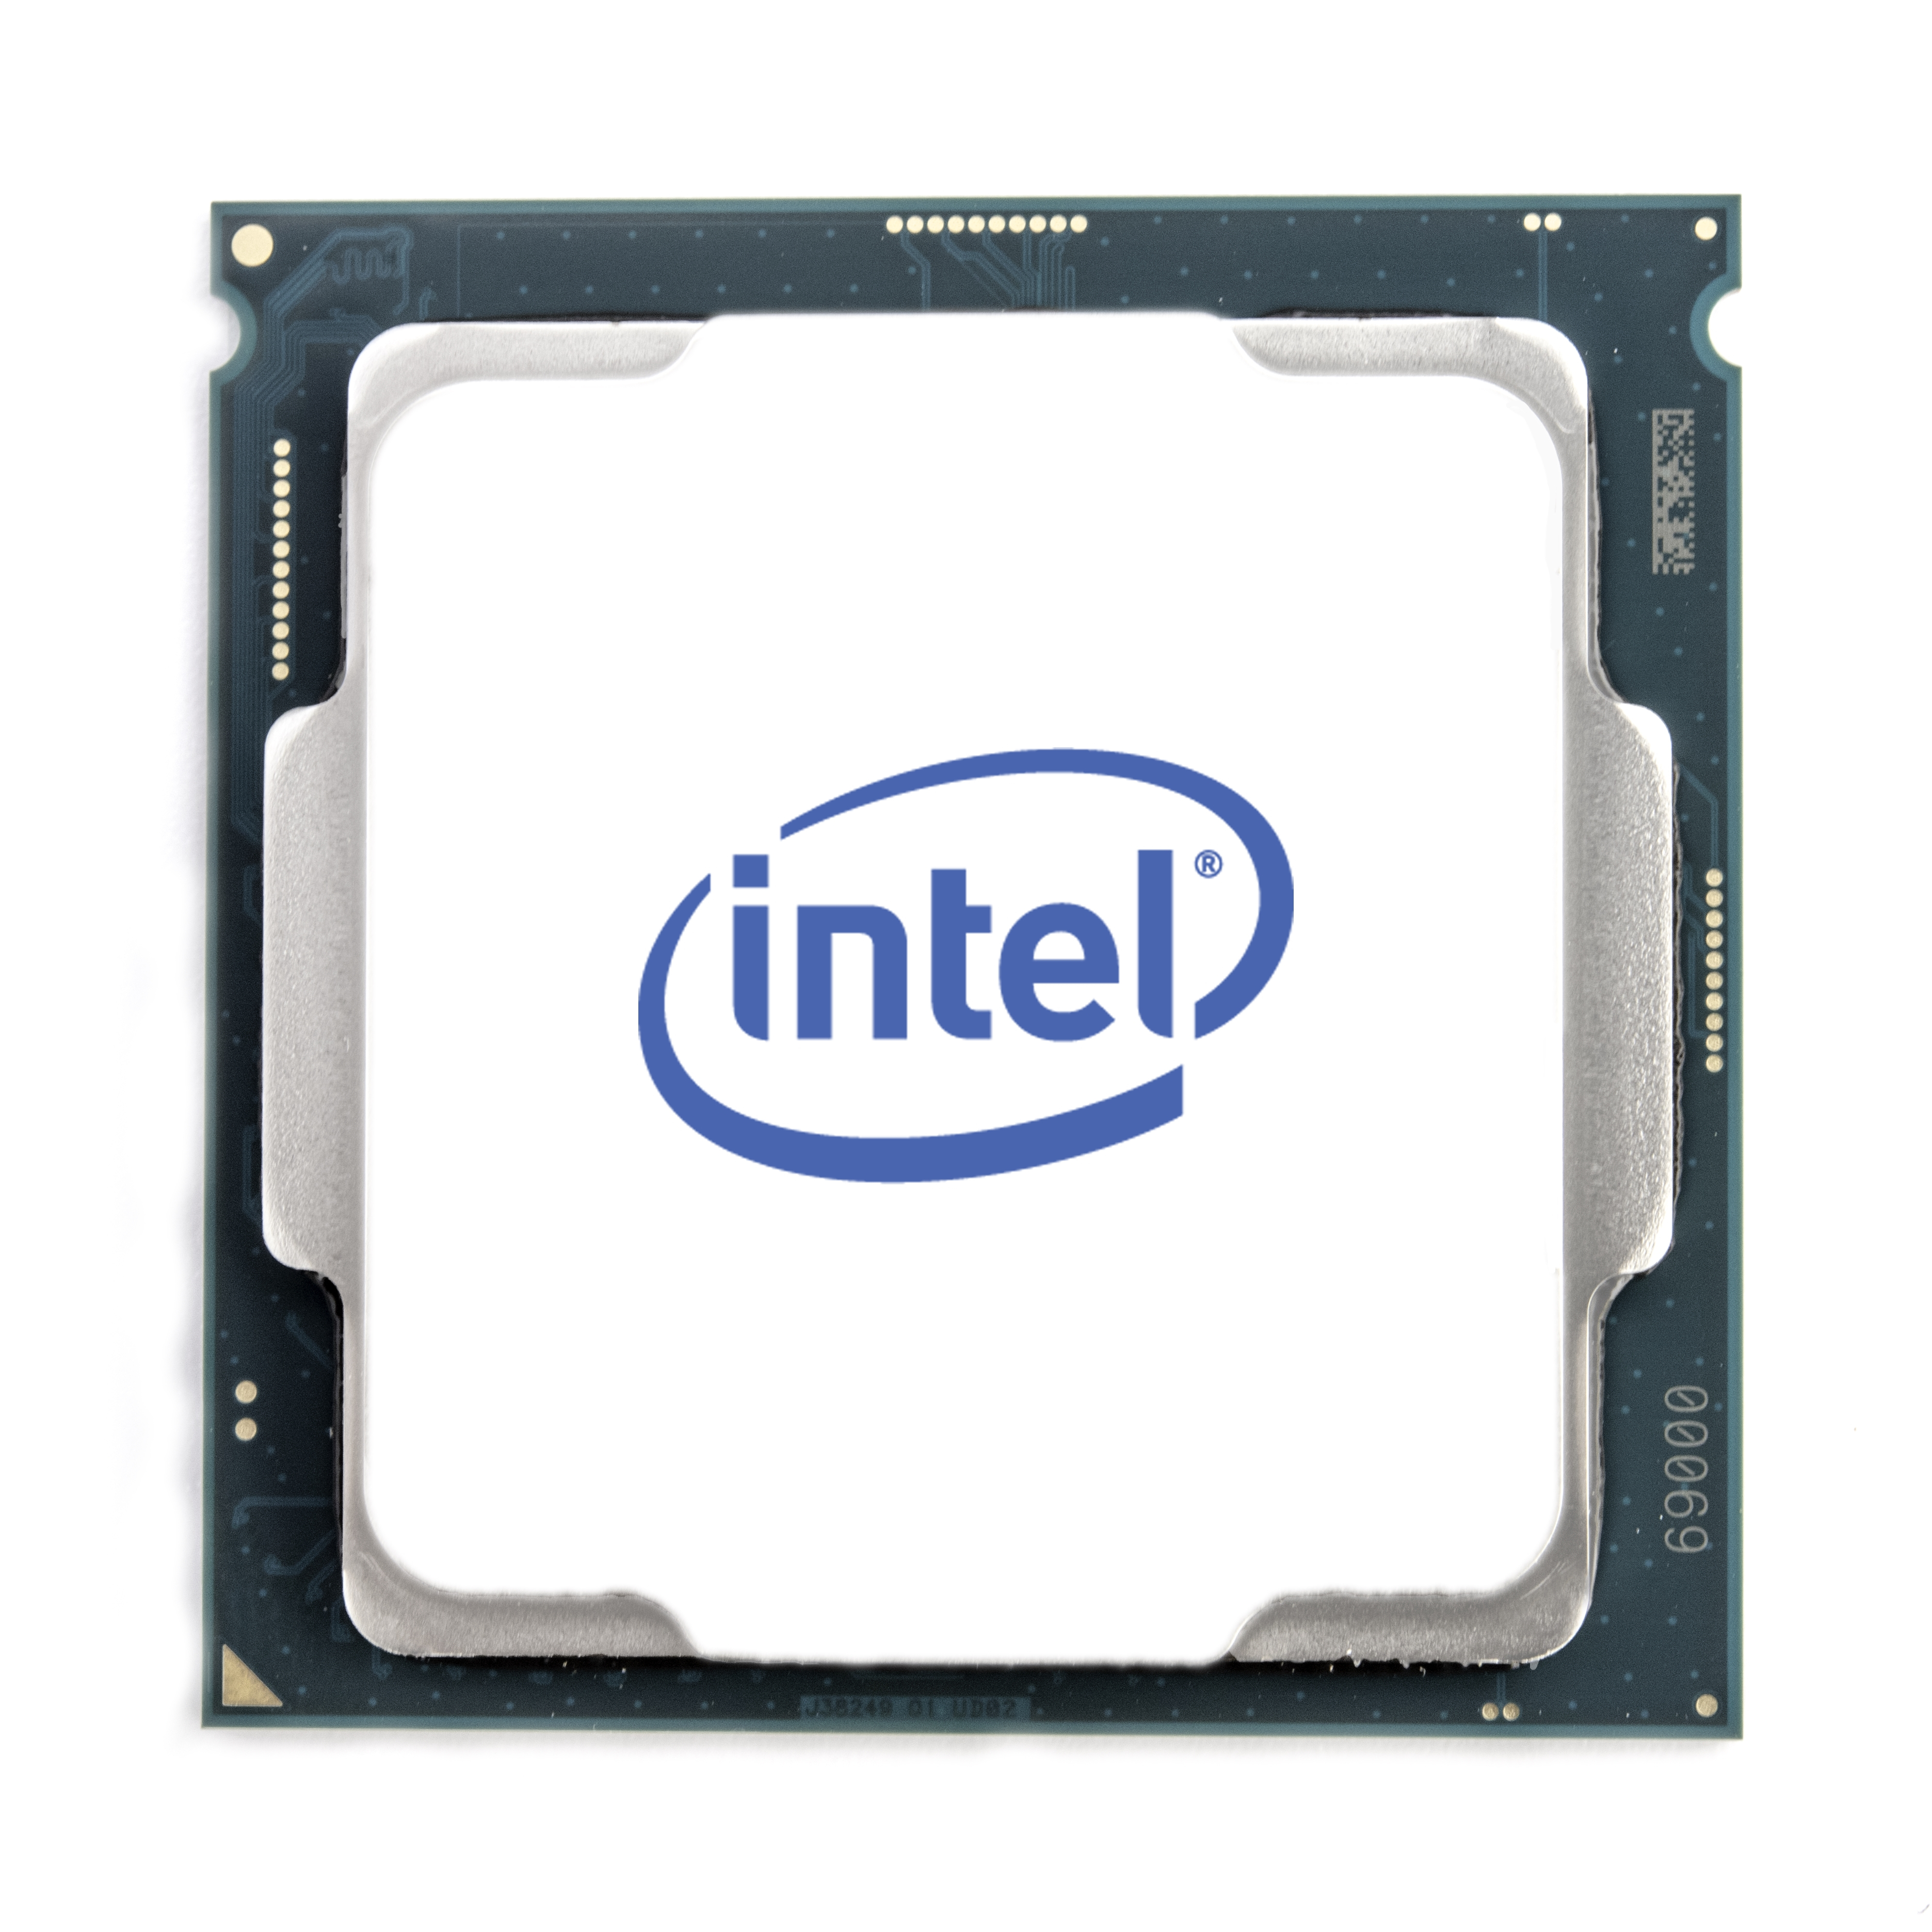 Procesador Intel Ci9-9900K S-1151 8C3.6Ghz S/Vent Graficos Uhd630